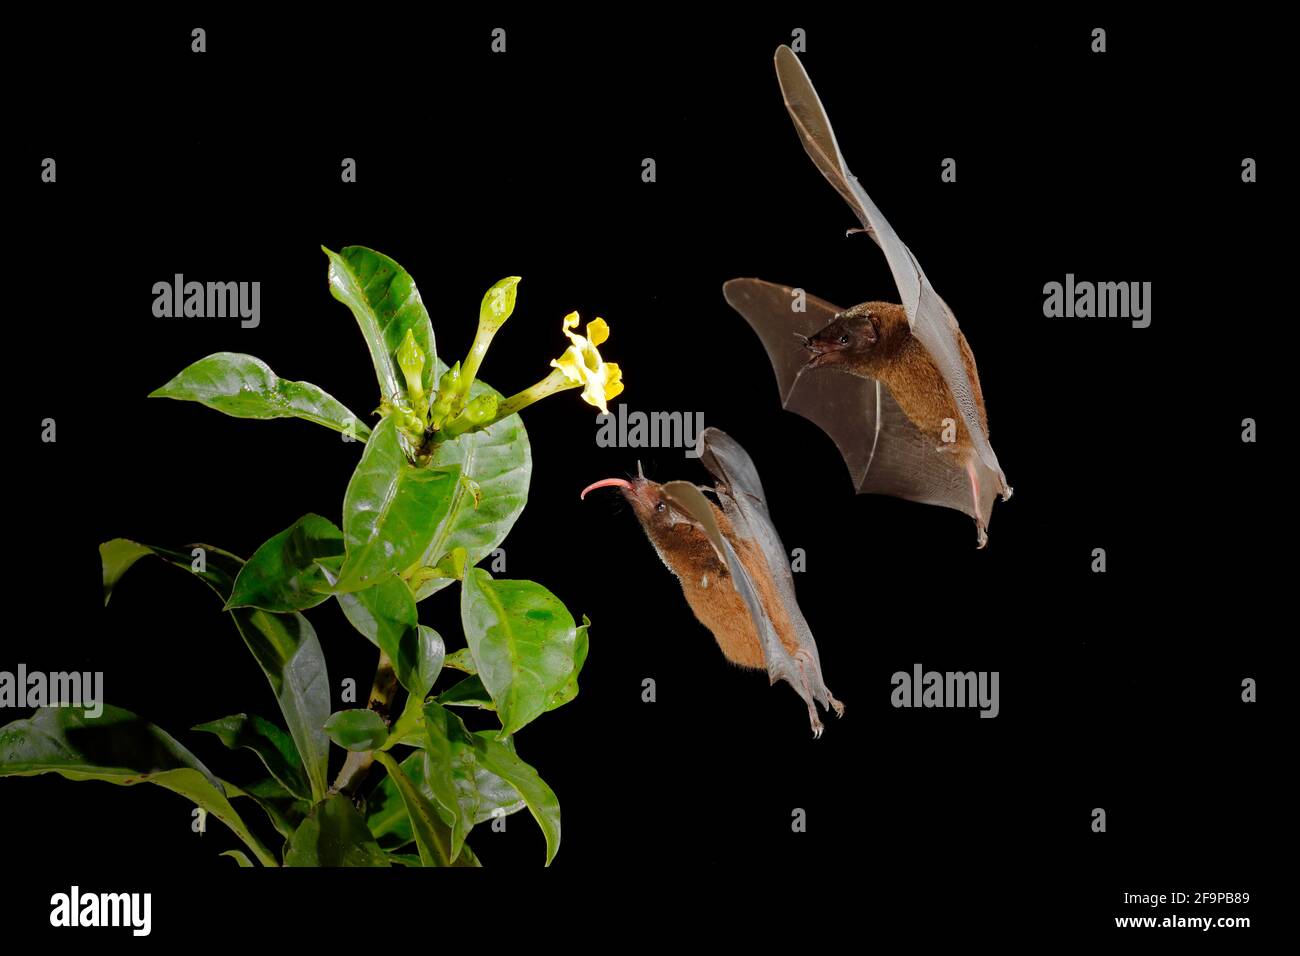 Murciélago néctar naranja, Lonchophylla robusta, murciélago volador en la noche oscura. Animal nocturno en vuelo con flor de alimentación amarilla. Escena de acción de la vida silvestre de la tropina Foto de stock